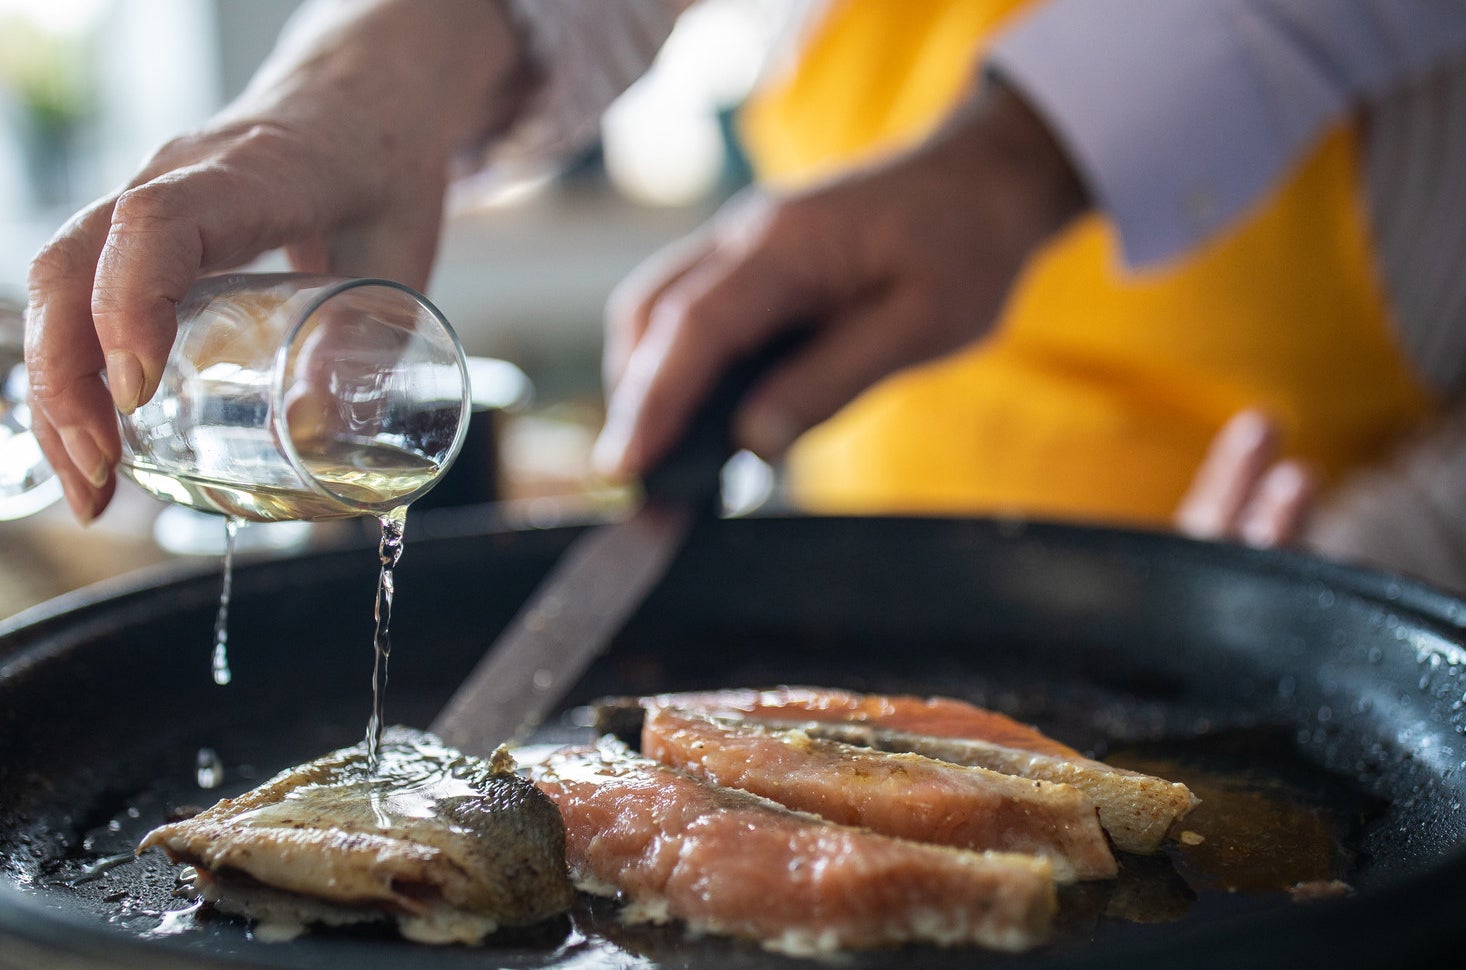 A woman adding white wine while preparing fish